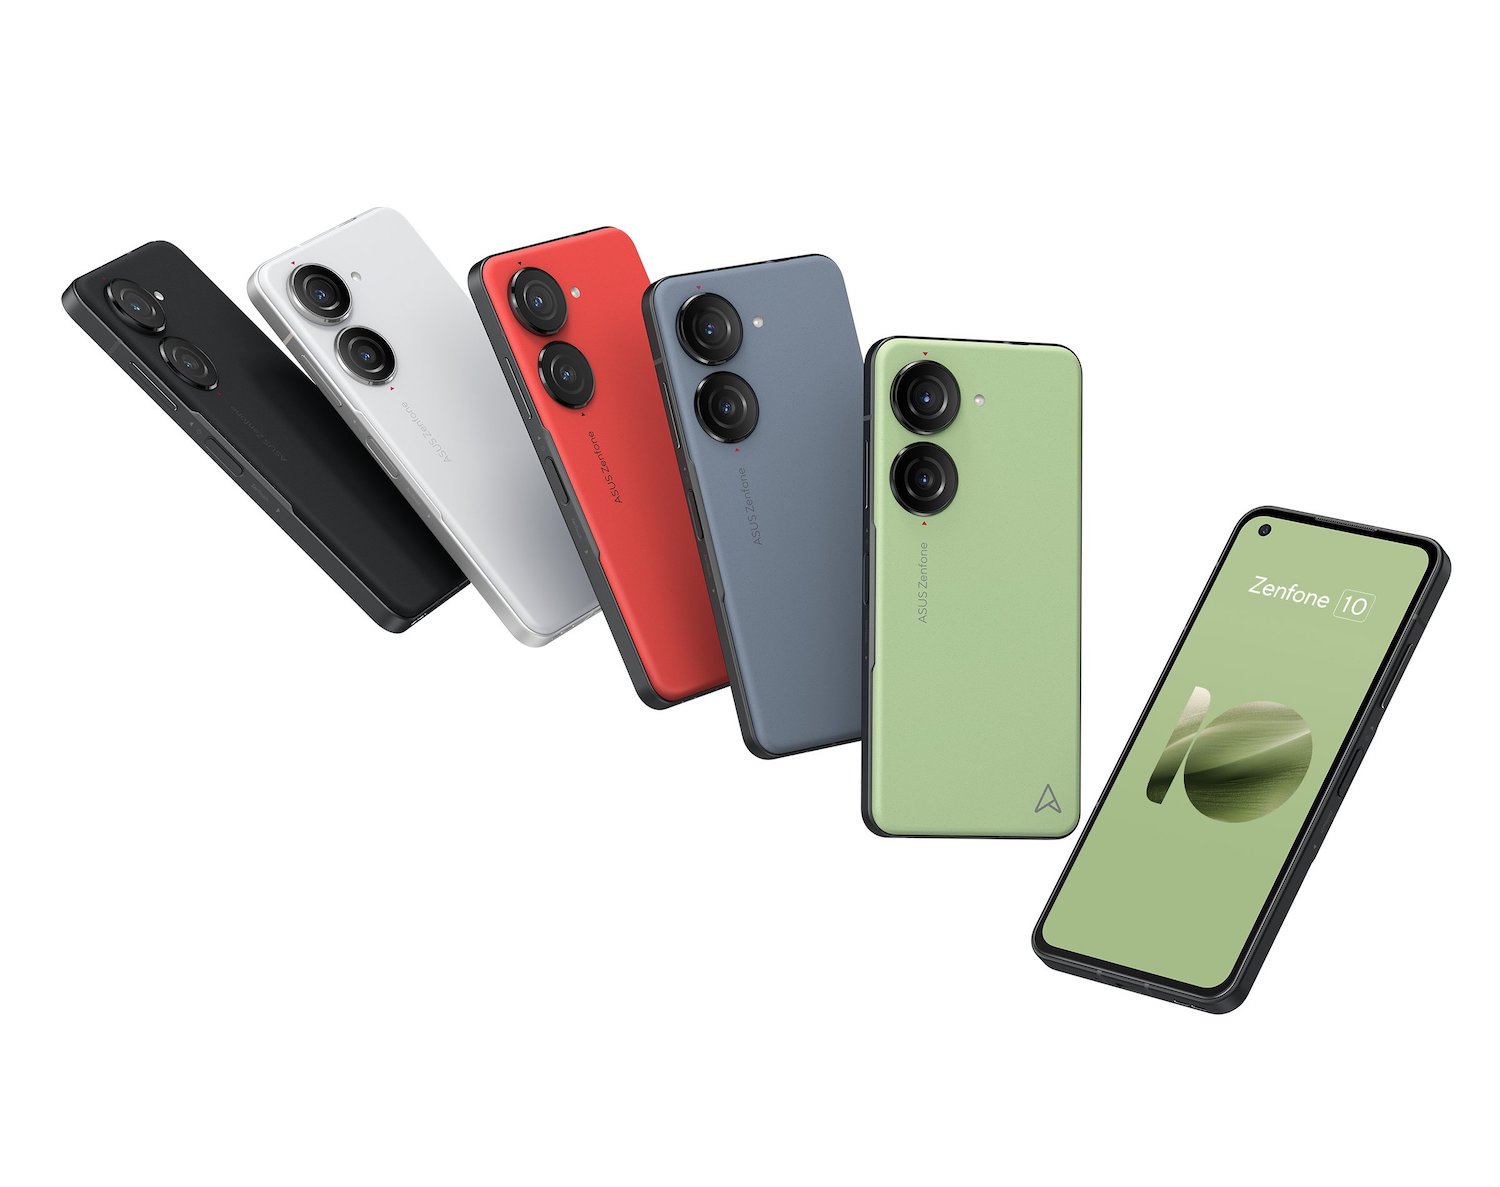 Asus Zenfone 10 filtrado en sus cinco colores 